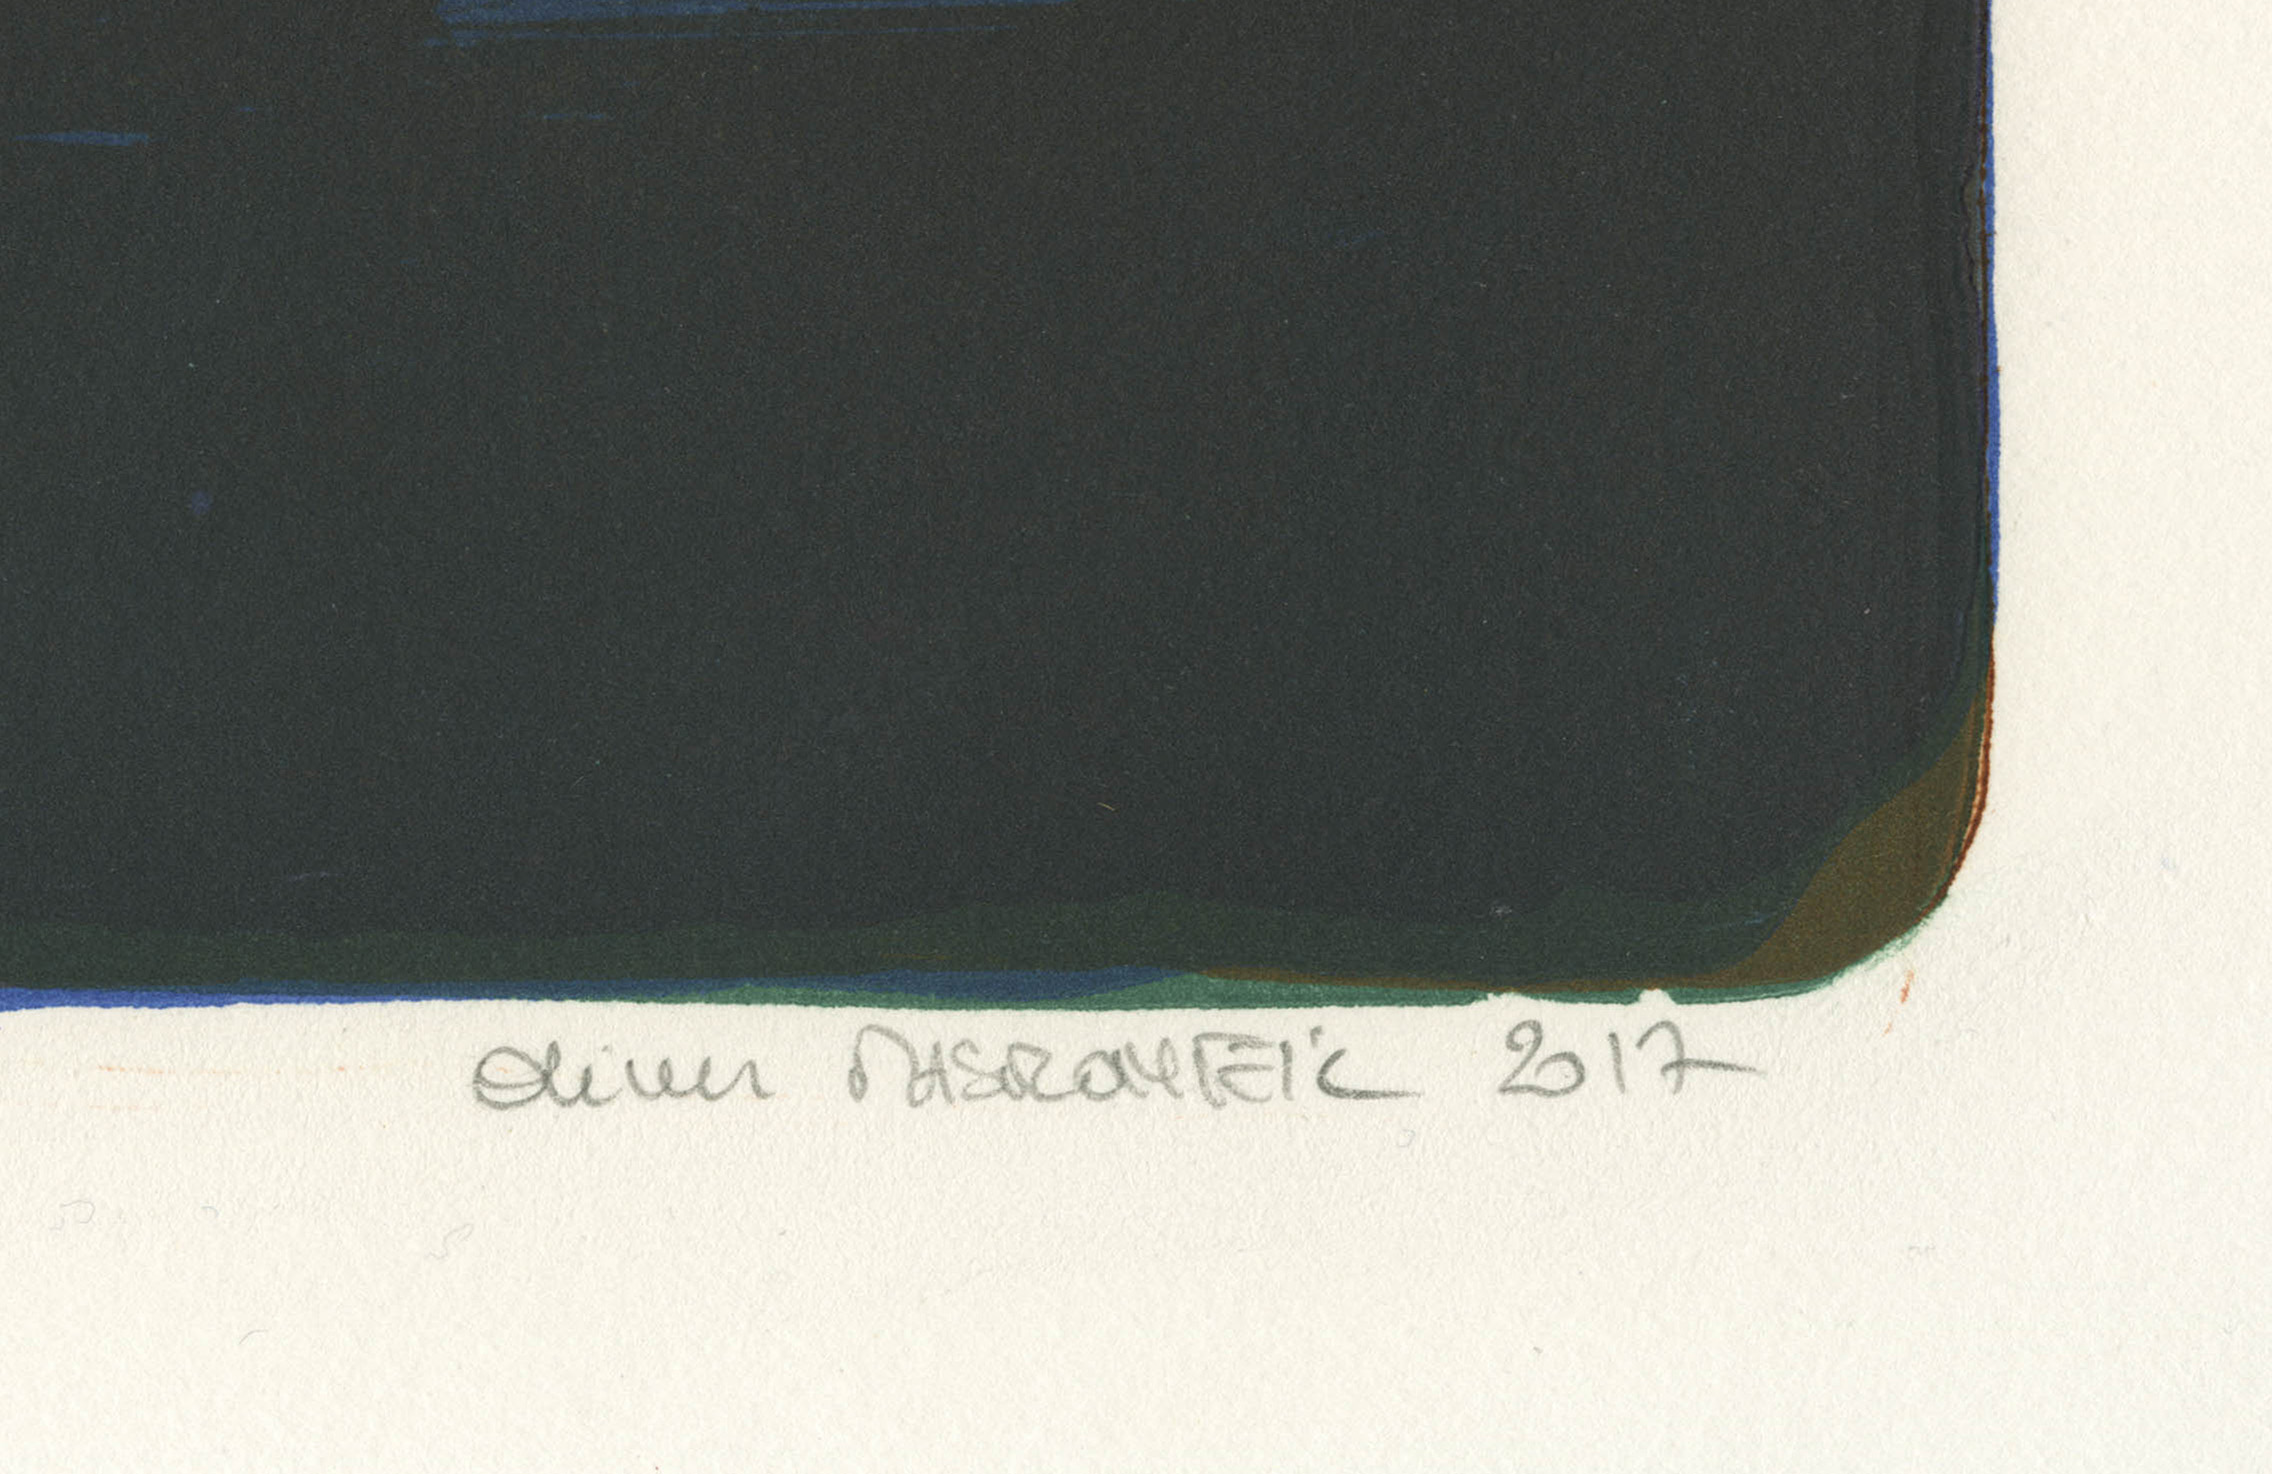 Olivier MASMONTEIL - Baigneuse 2 (Au Lac Tekapo), 2017 -  Estampe signée, datée et numérotée par l'artiste